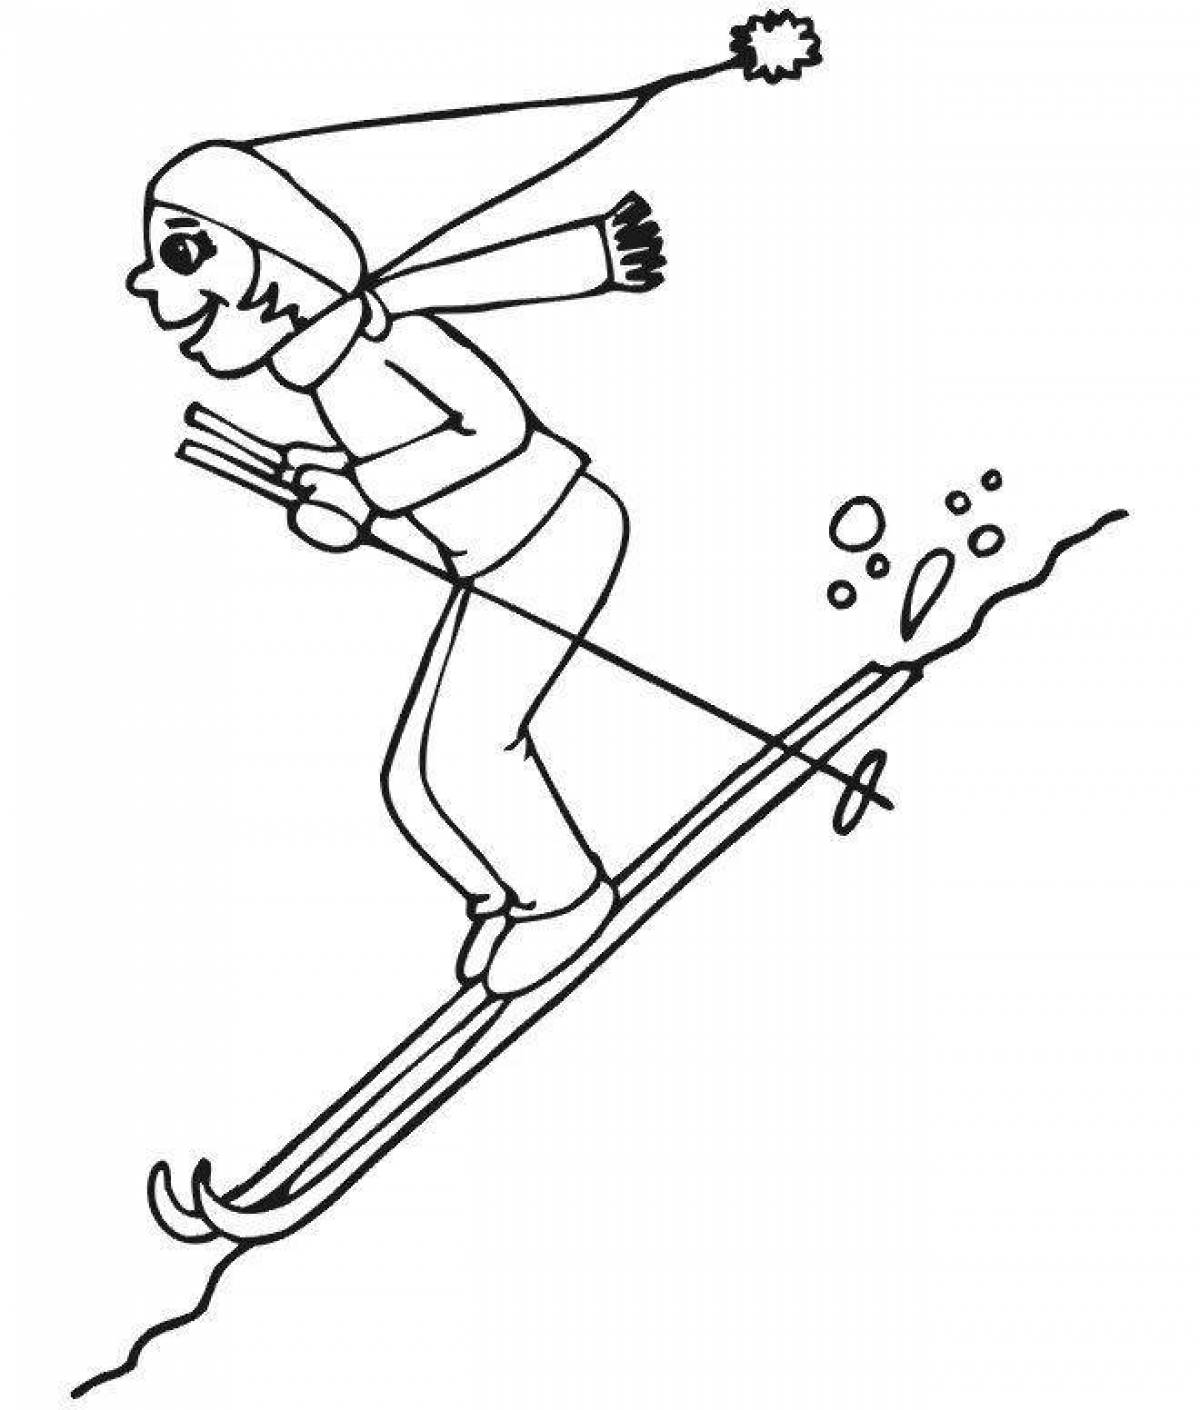 Great ski coloring